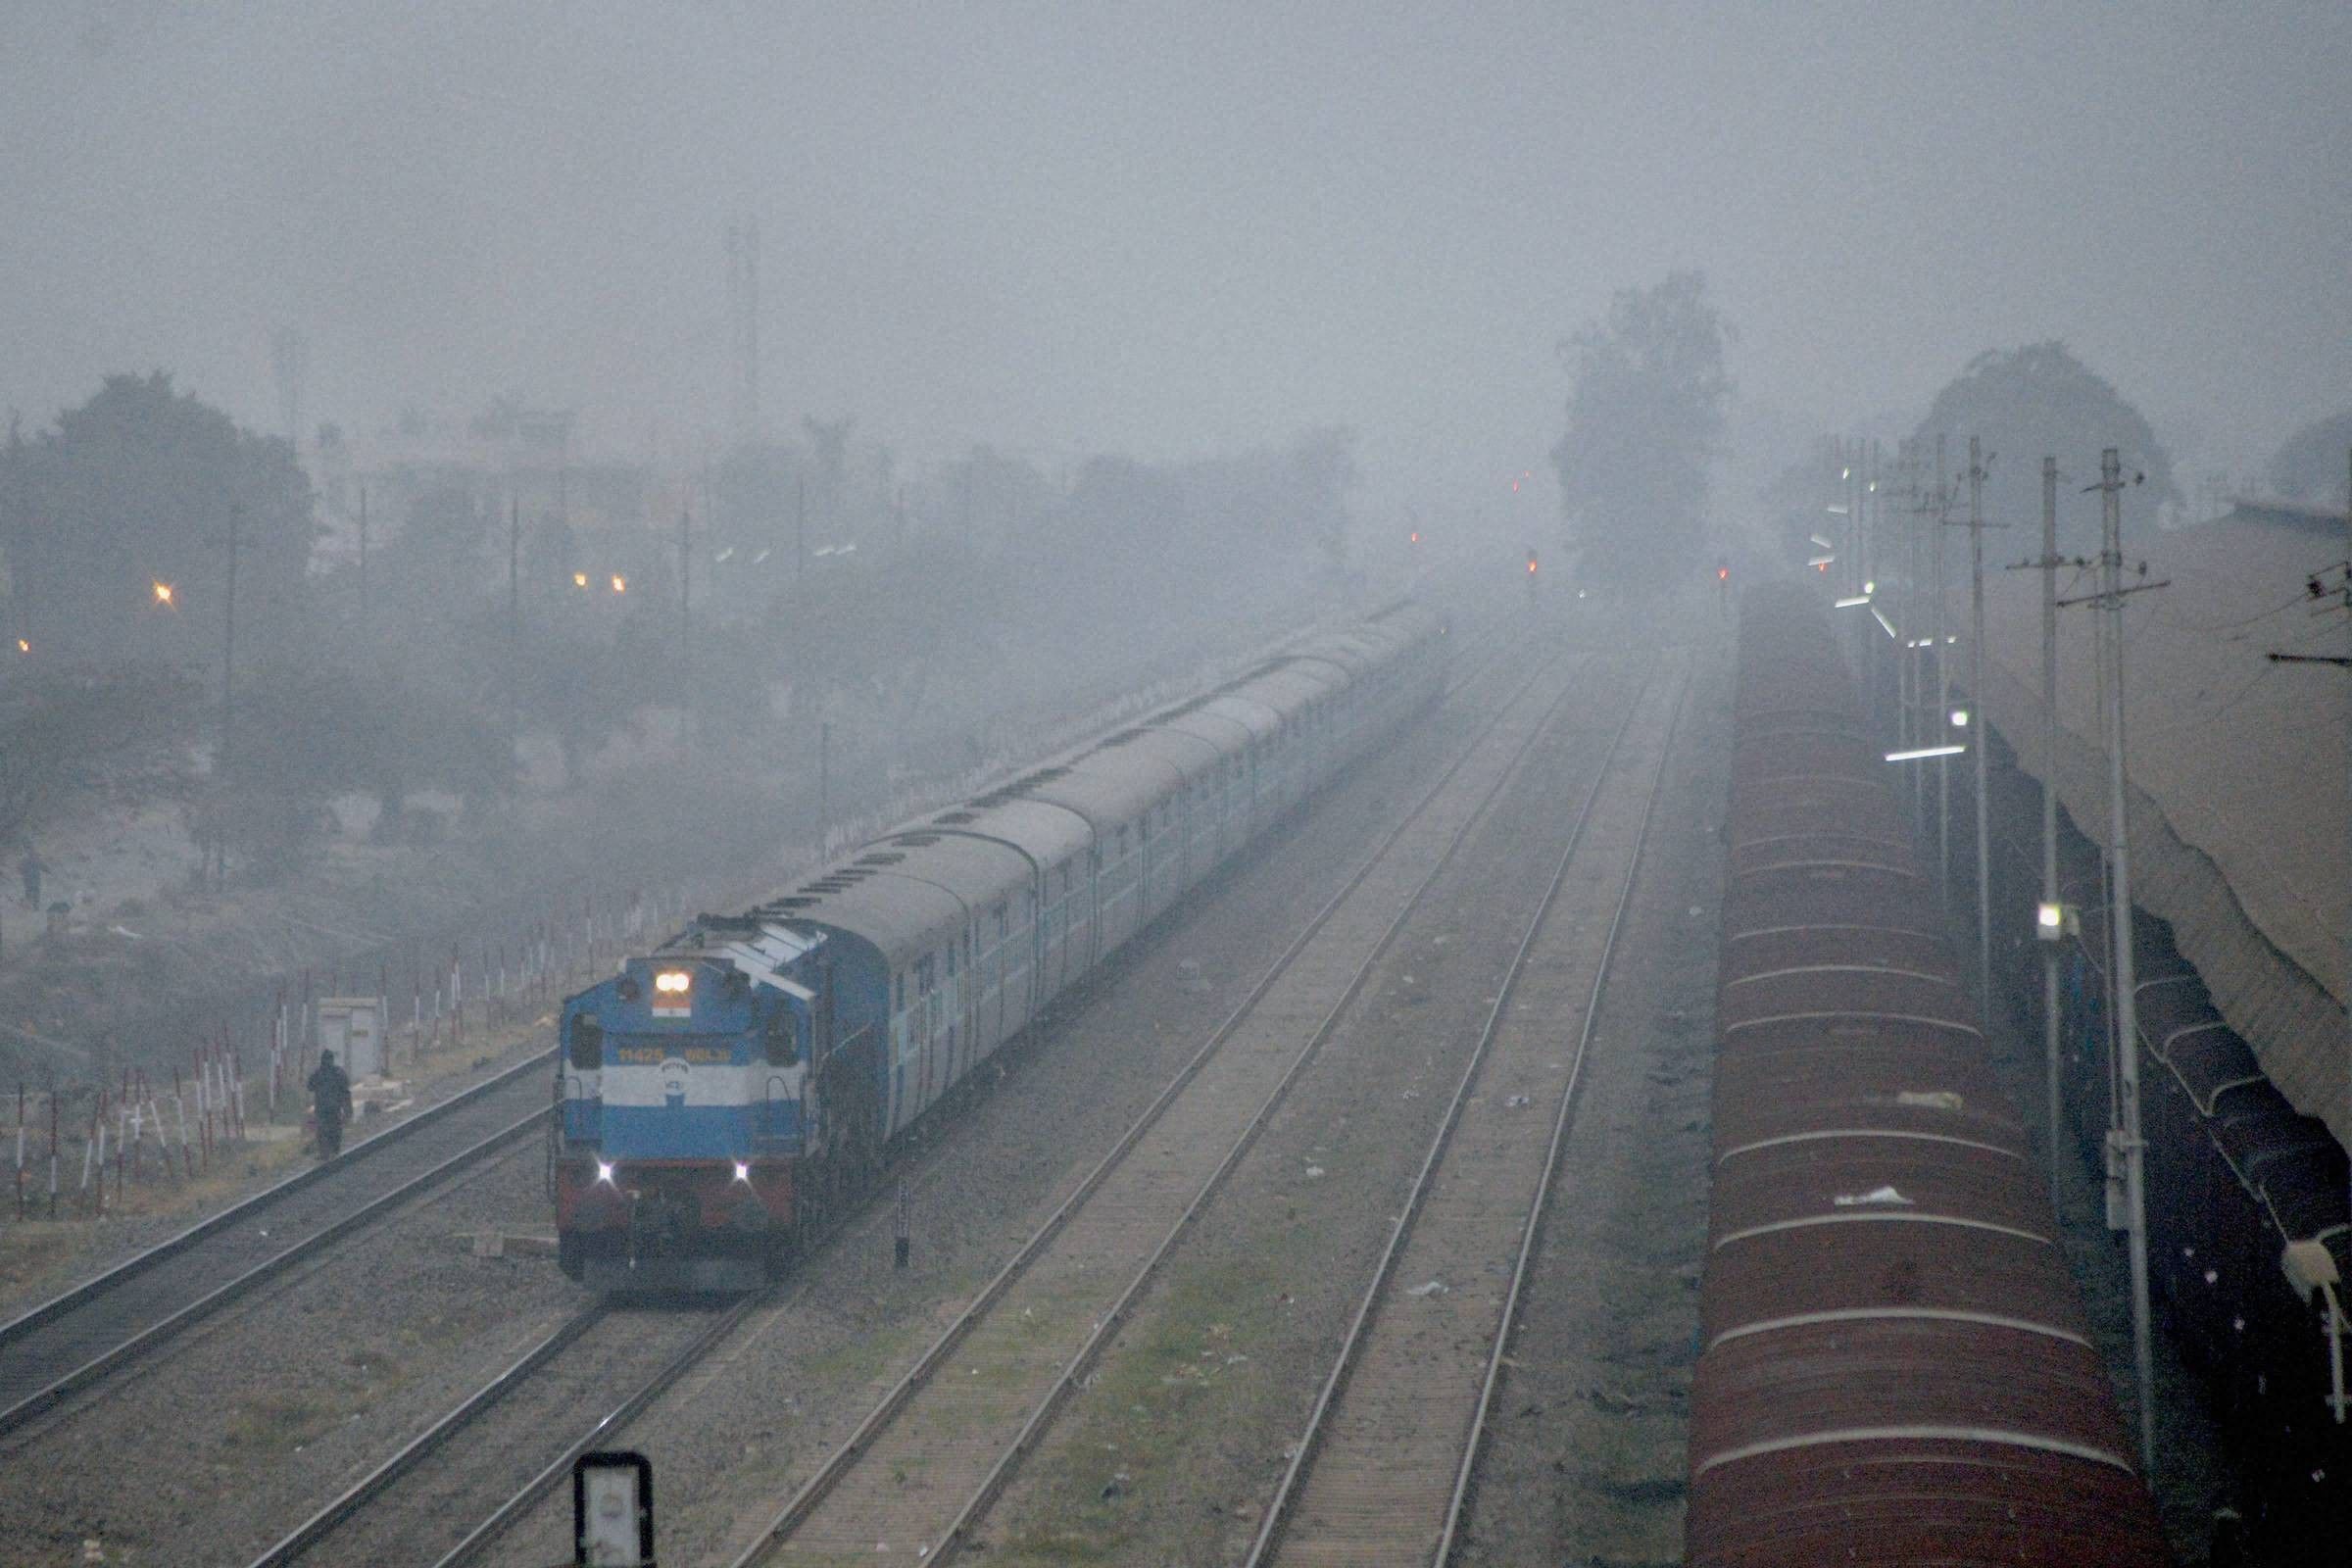 घने कोहरे के कारण देरी से चल रहीं 28 रेलगाड़ियां 